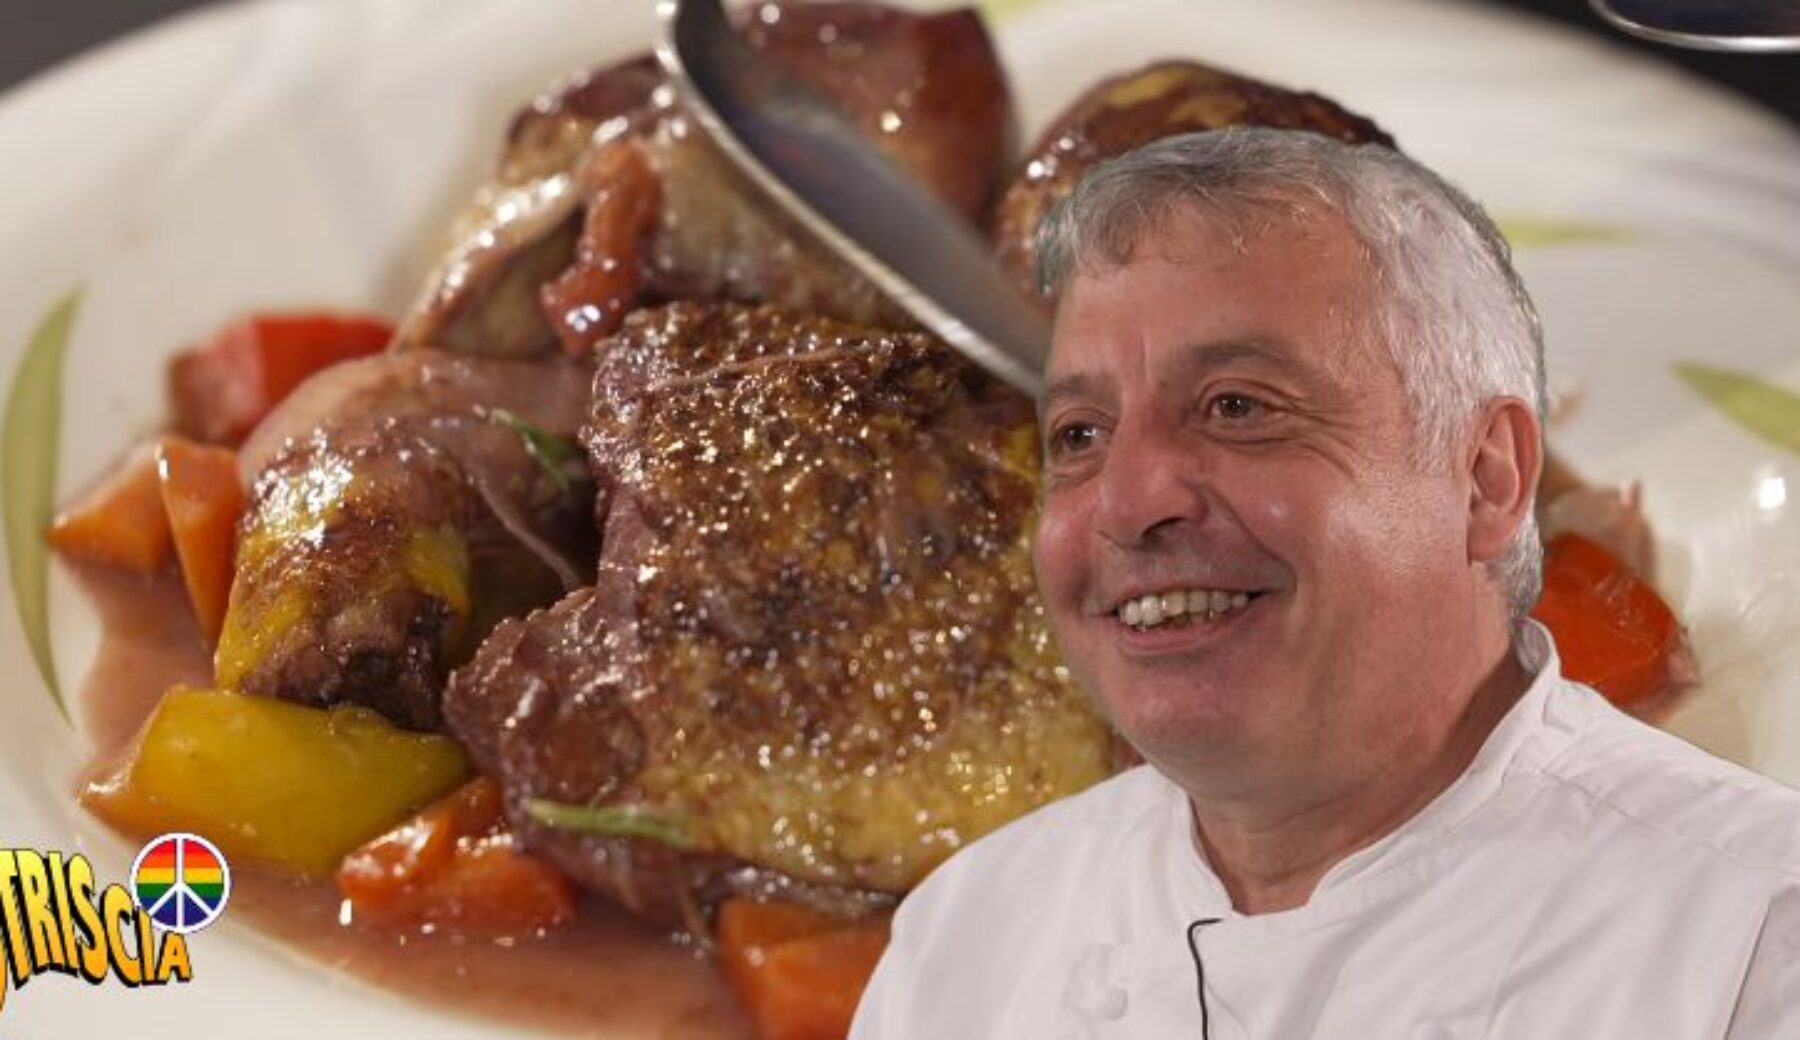 Domani sera nella rubrica “Capolavori italiani in cucina”: il “Galletto al Barolo” di Filippo Giaccone